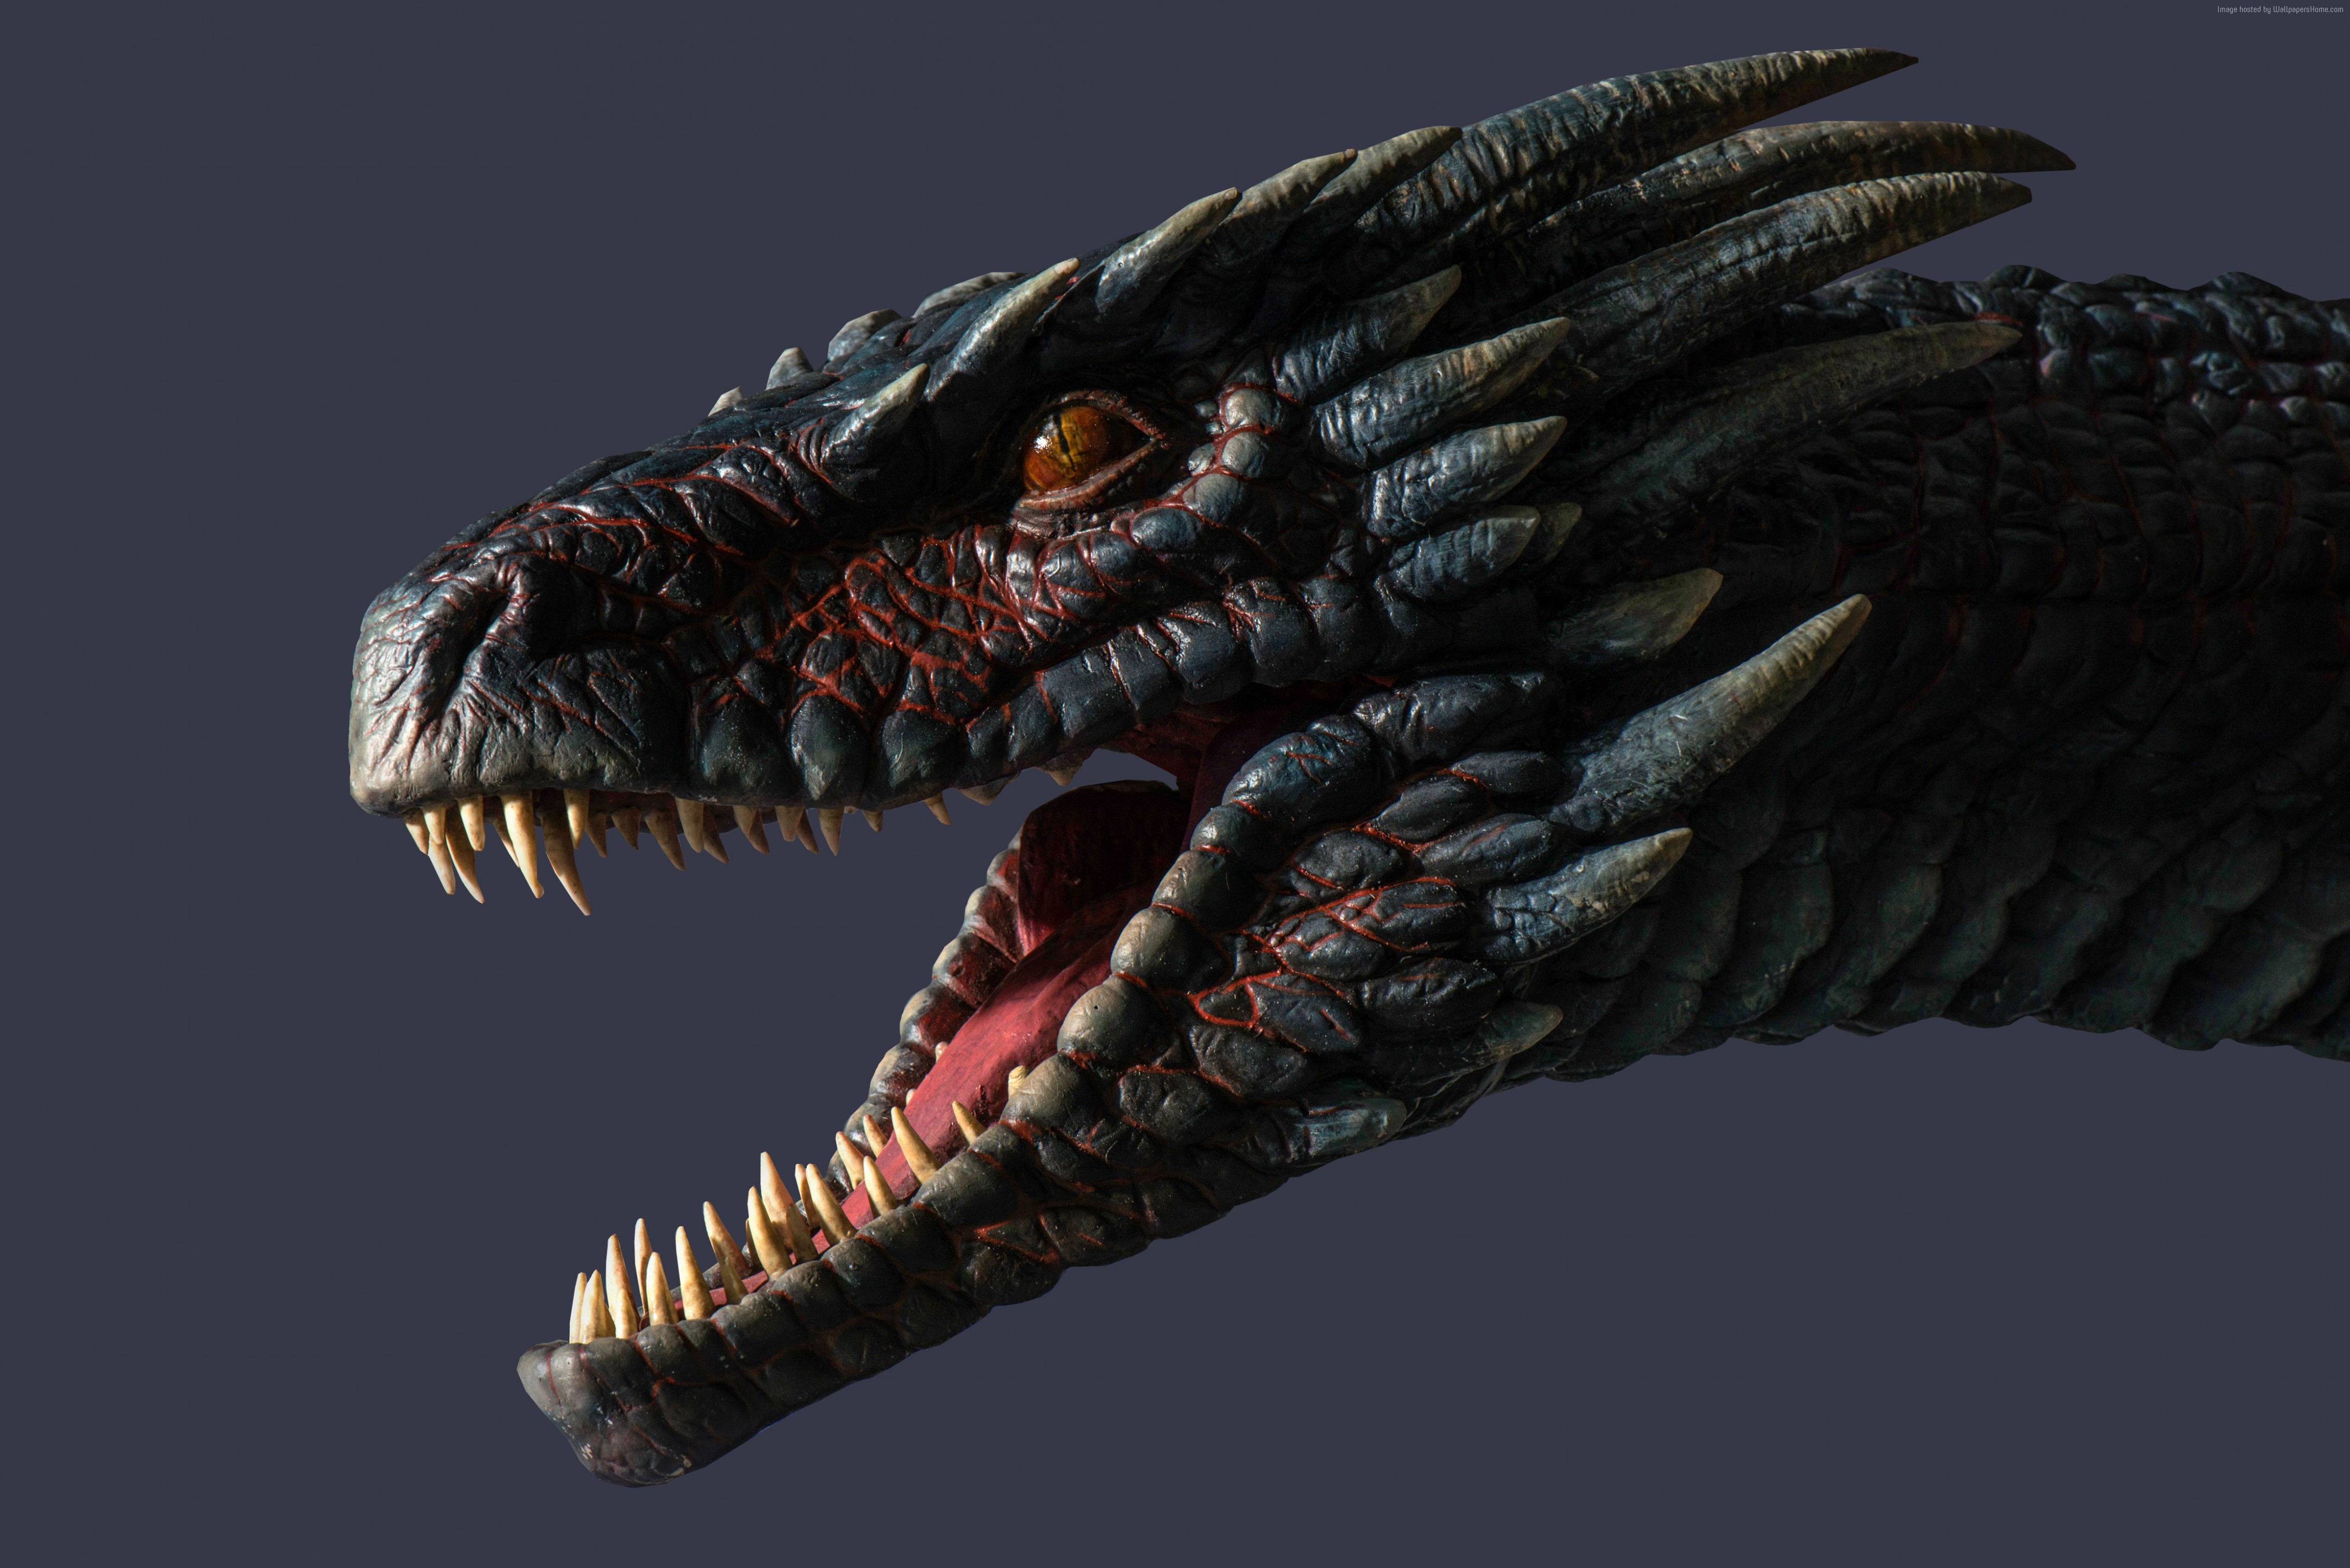 juego de tronos dragon wallpaper,dinosaurio,velociraptor,modelado 3d,tiranosaurio,mandíbula